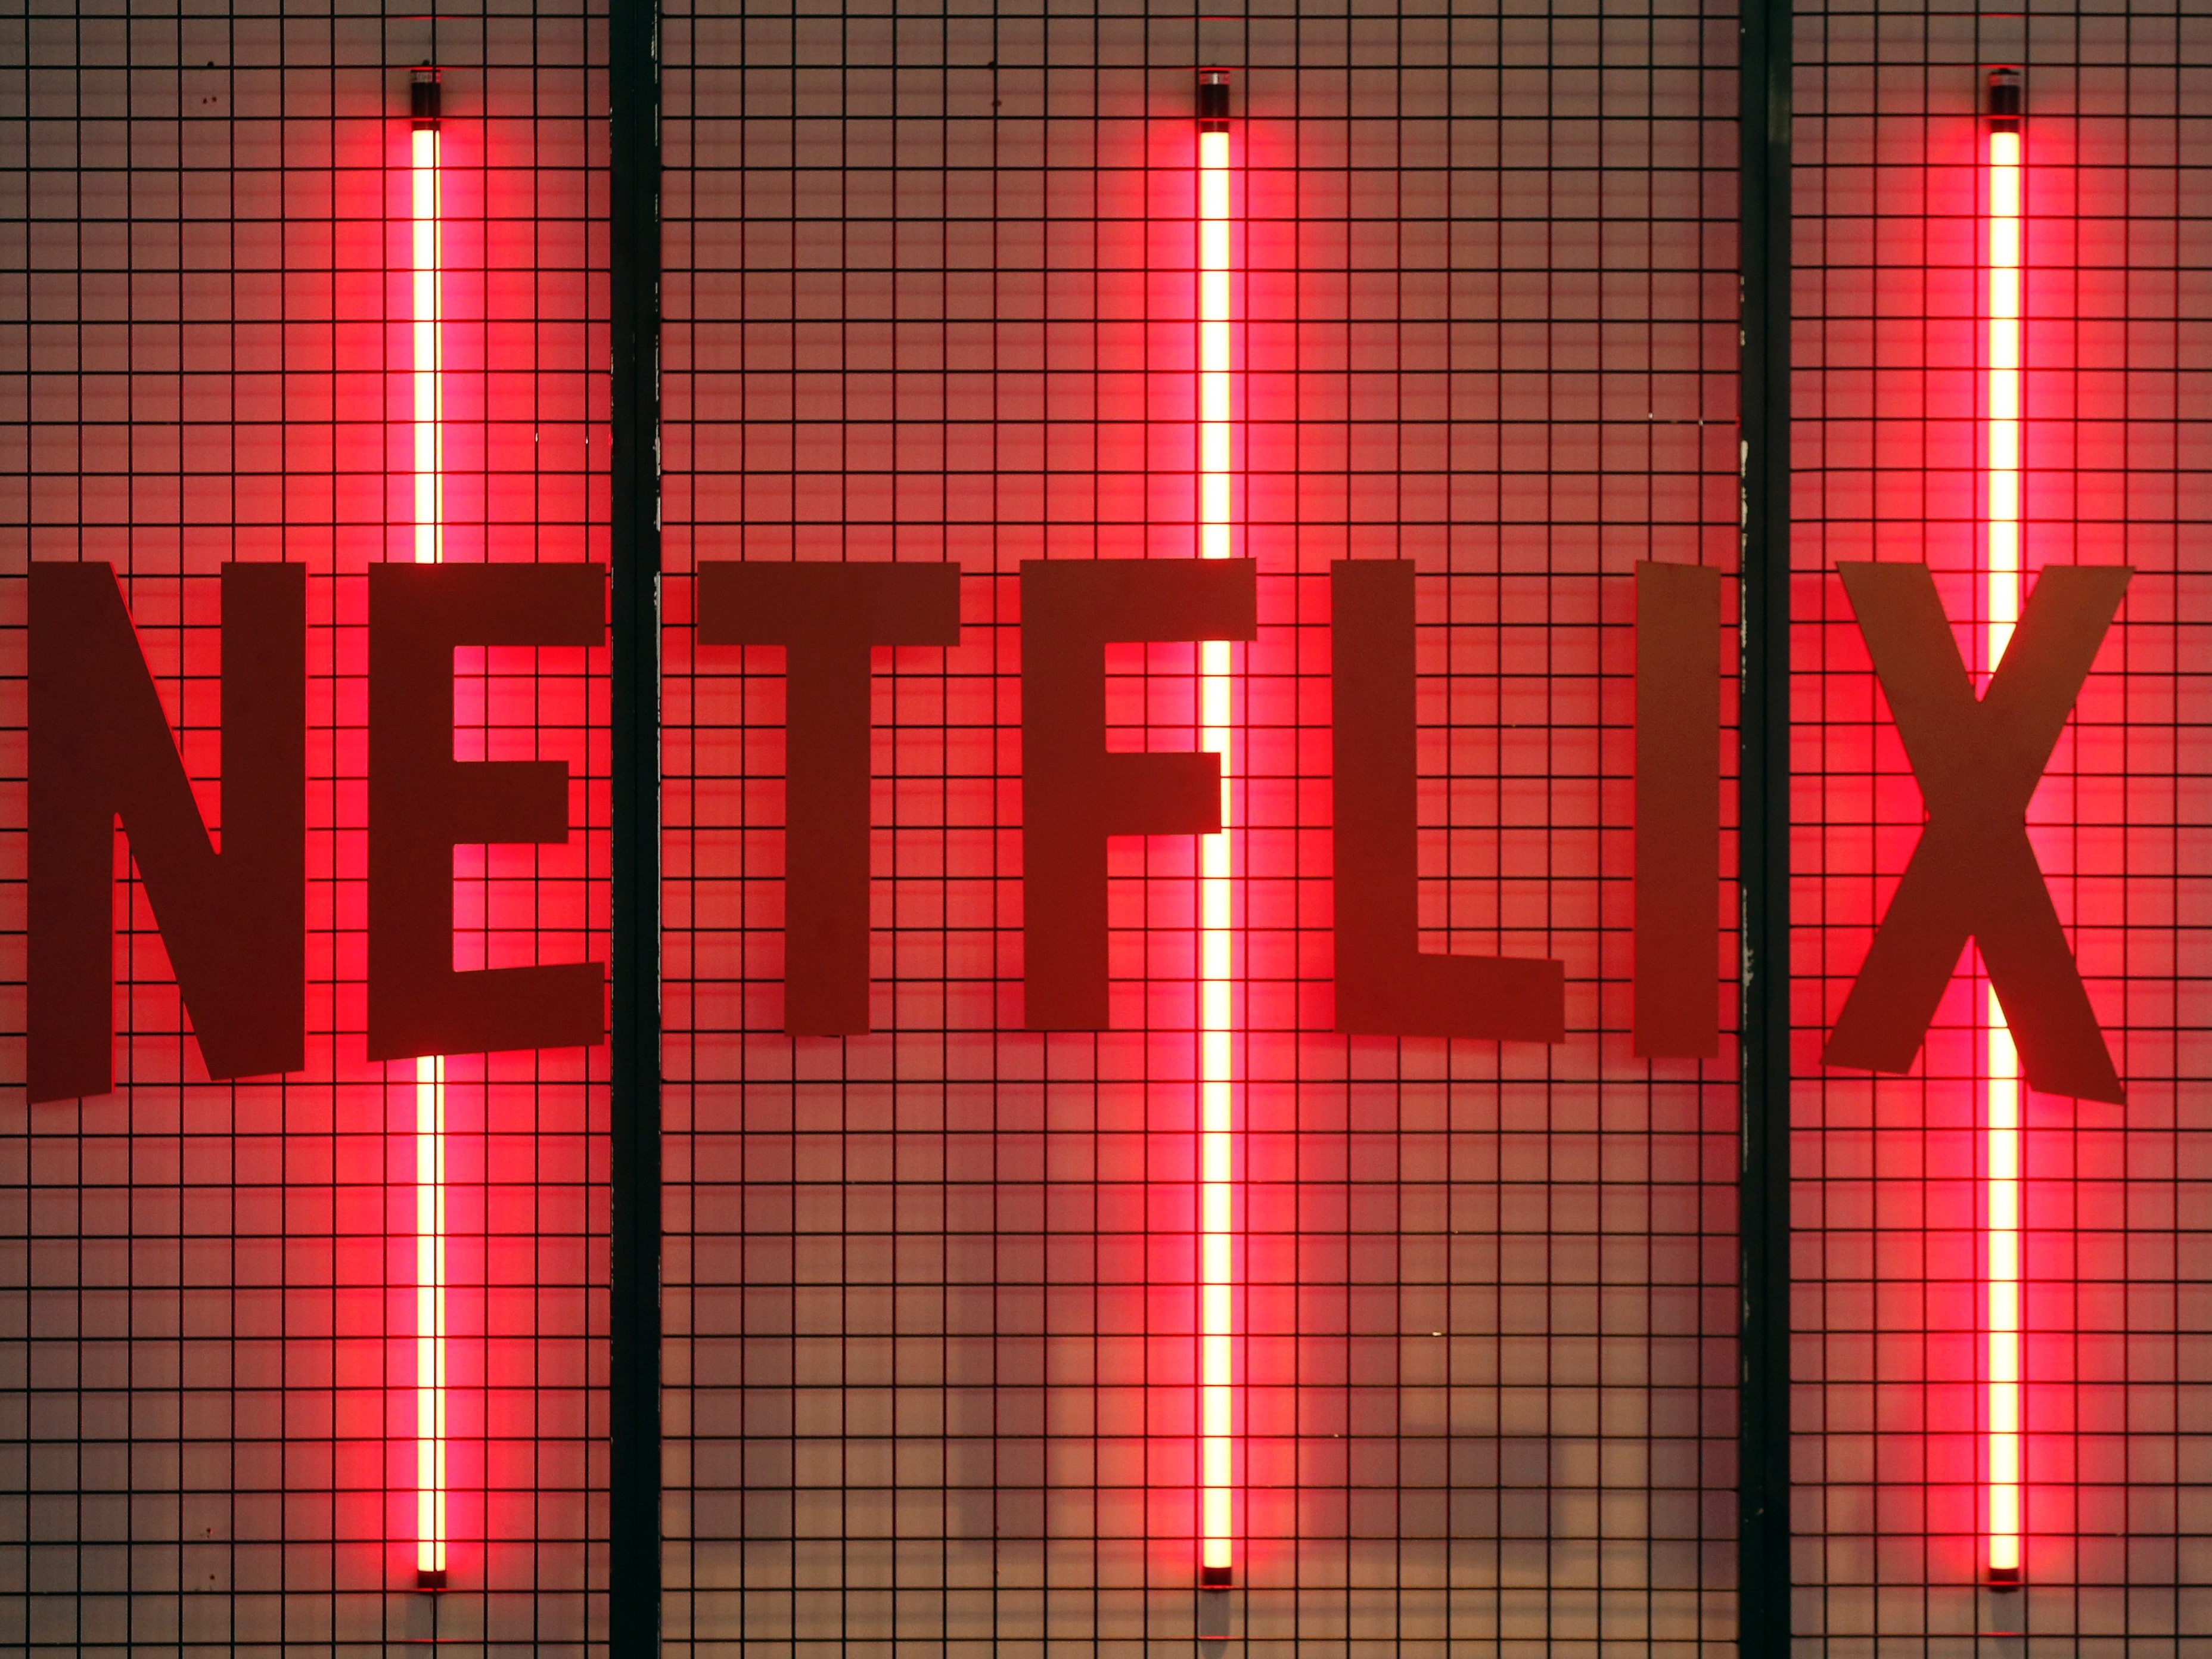 Netflix é notificada pelo Procon-SP após reclamações em massa